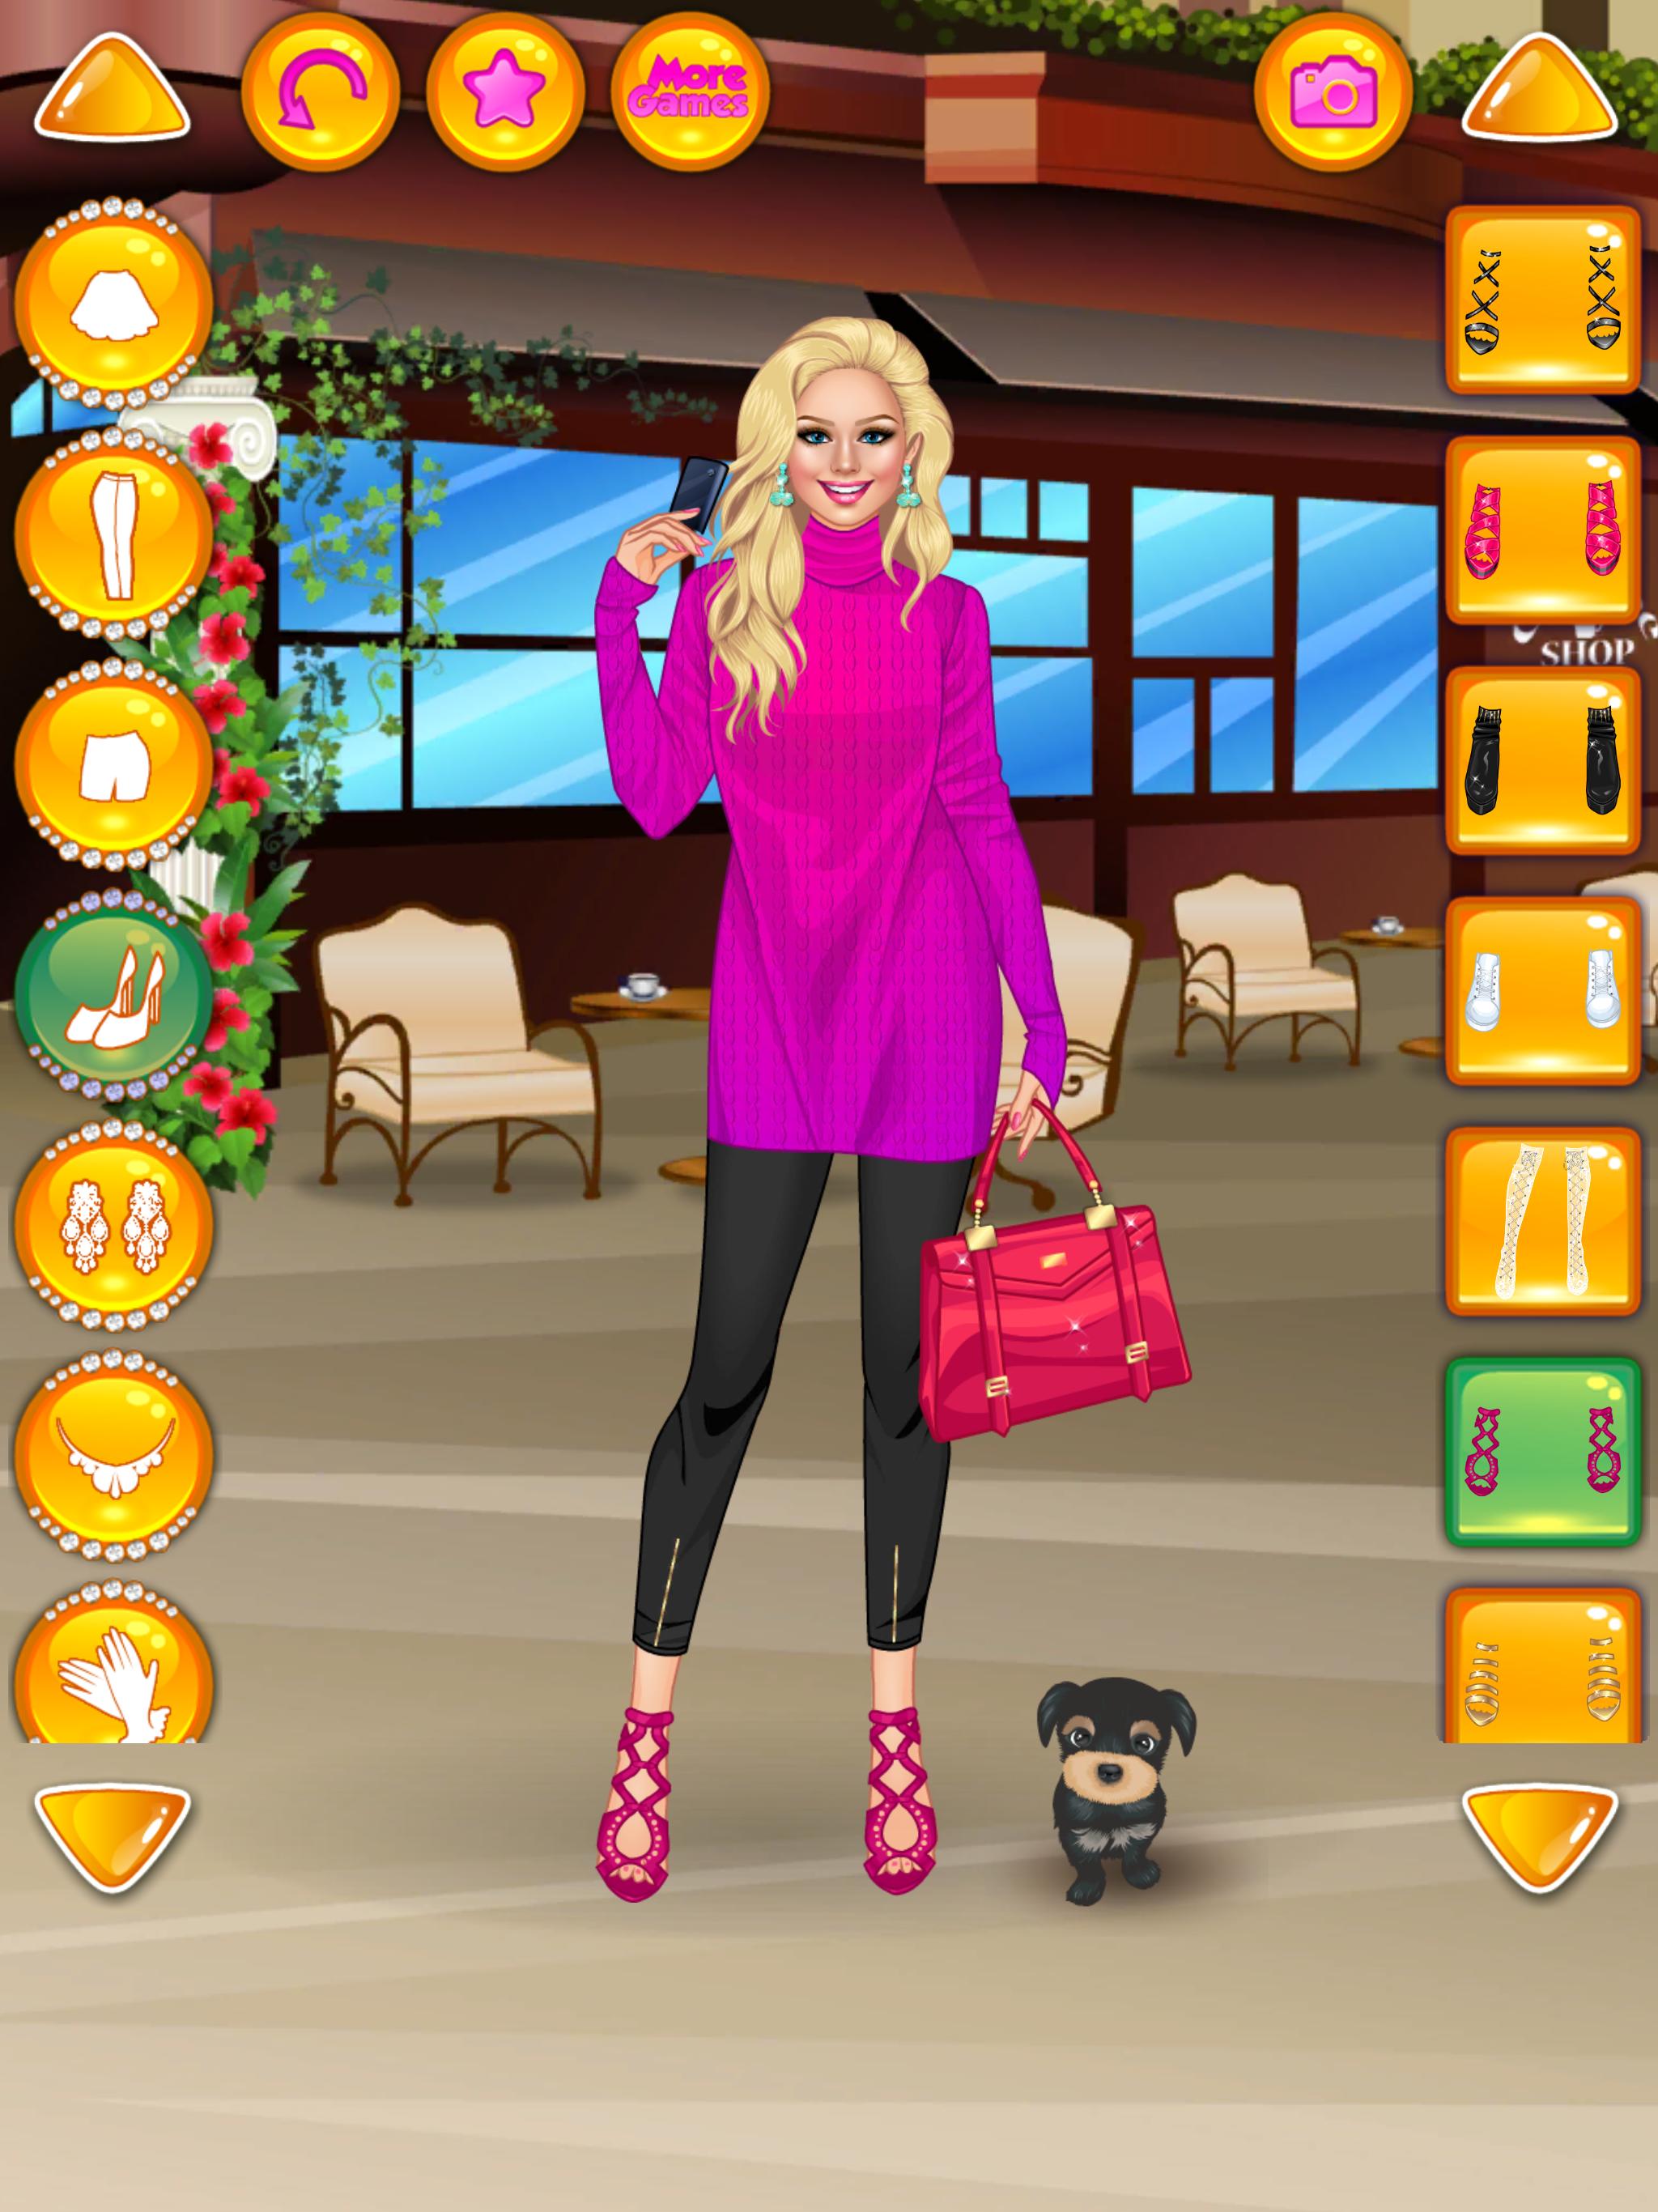 Rich Girl Crazy Shopping - Fashion Game 1.0.7 Screenshot 16